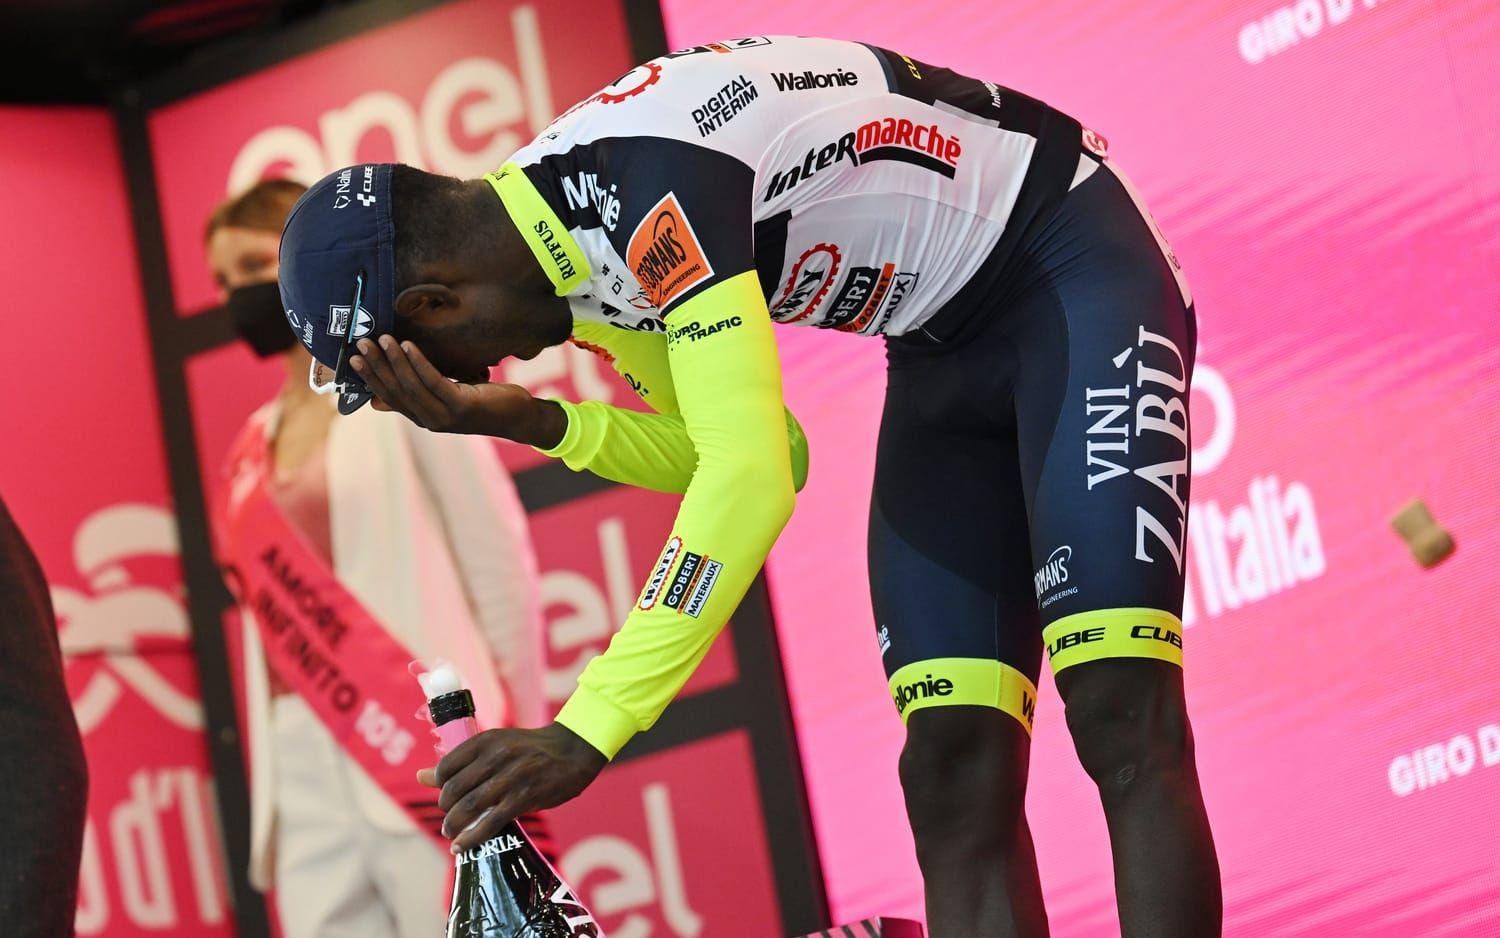 Efter tisdagens etappseger i Giro d’Italia sköt Biniam Girmay sig själv i ögat med en kork. 